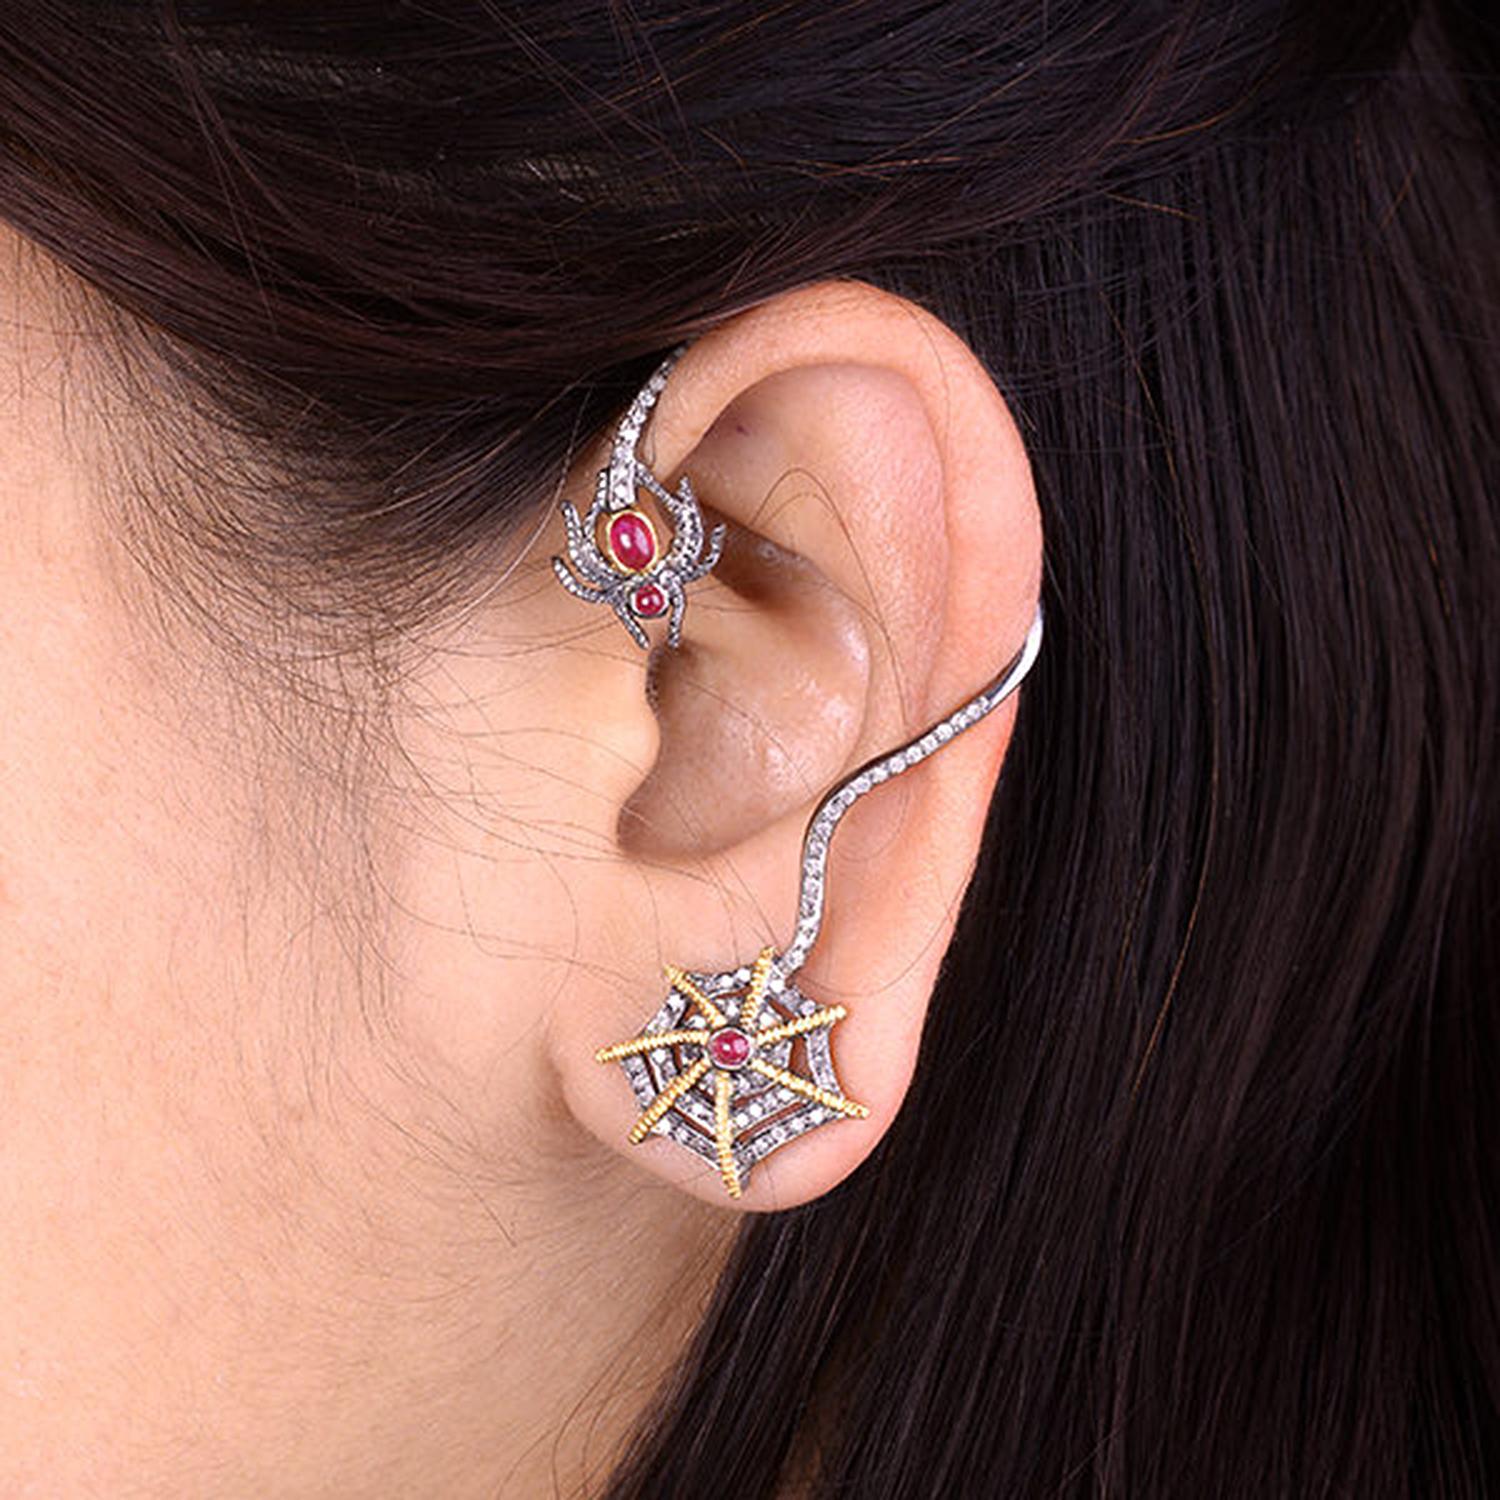 diamond cuff earrings